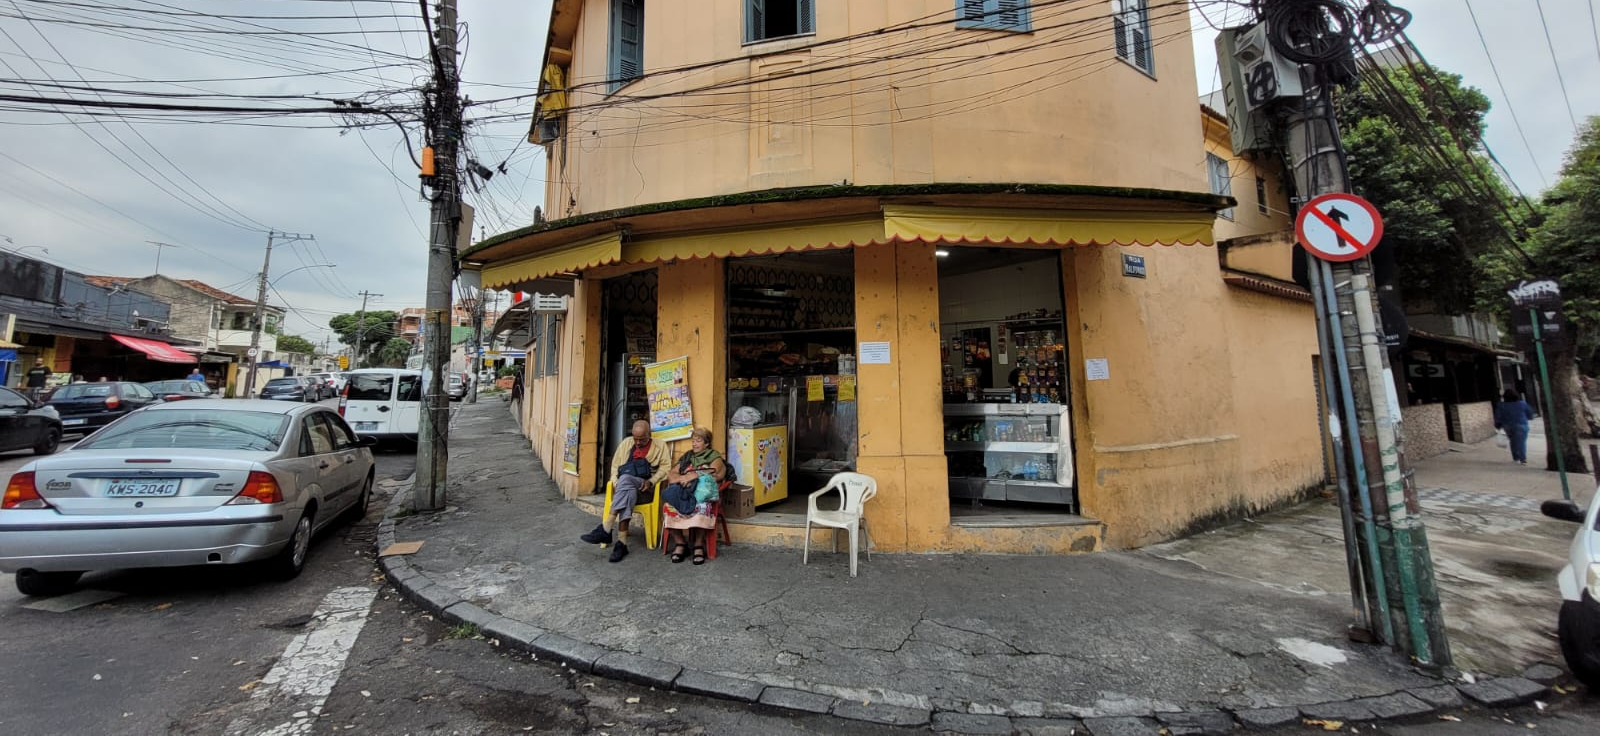 Localizada entre as ruas Maldonado e Fernandes da Fonseca, a loja mantém a confiança da vizinhança entregando a mesma qualidade